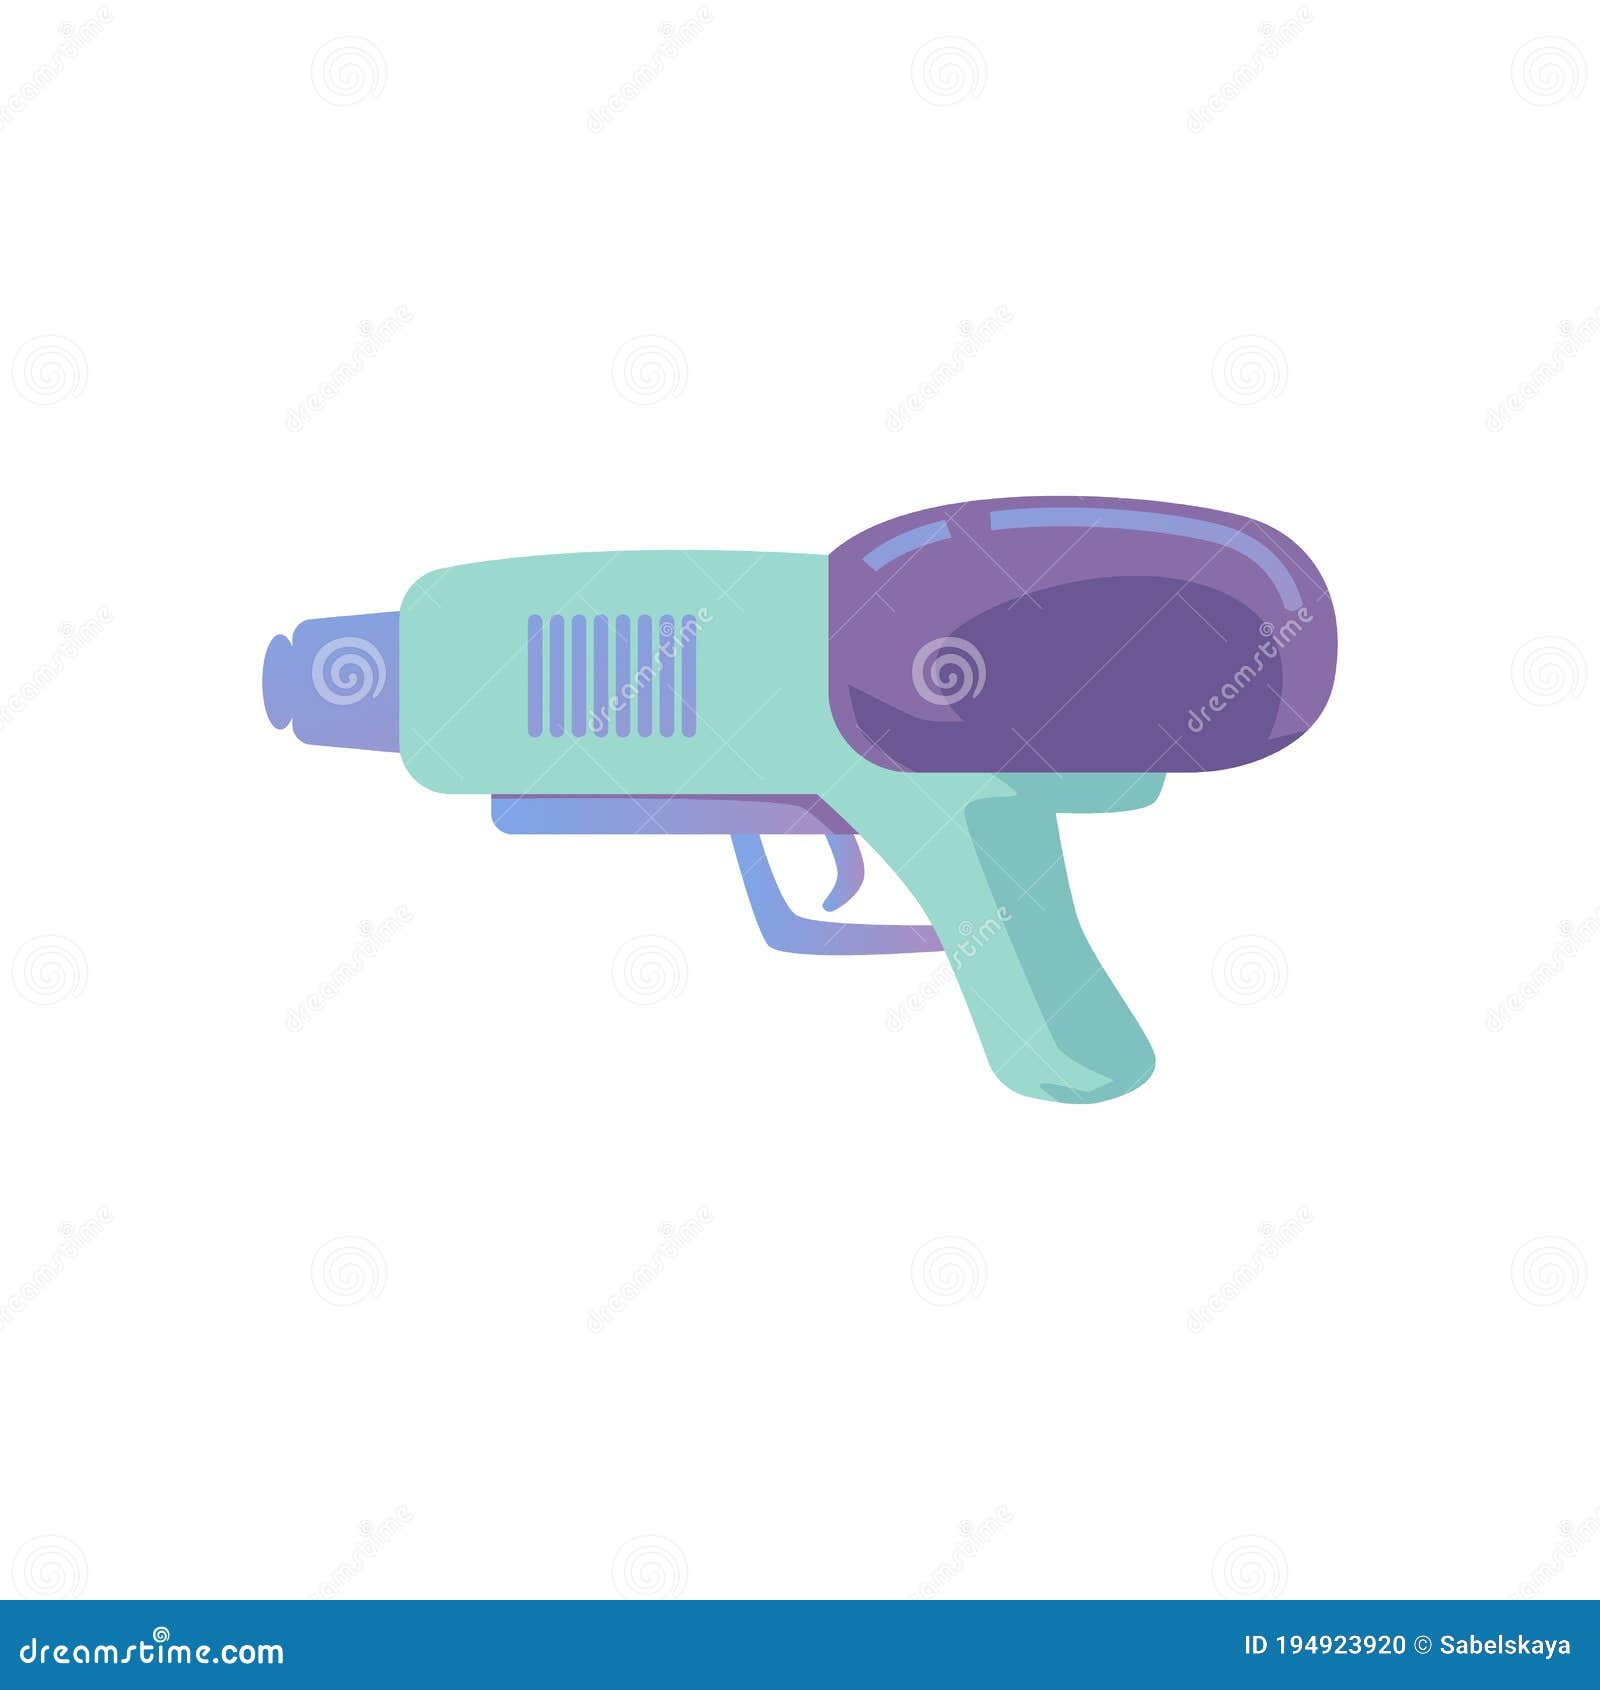 Ilustración de pistola de agua de plástico para niños con chorro